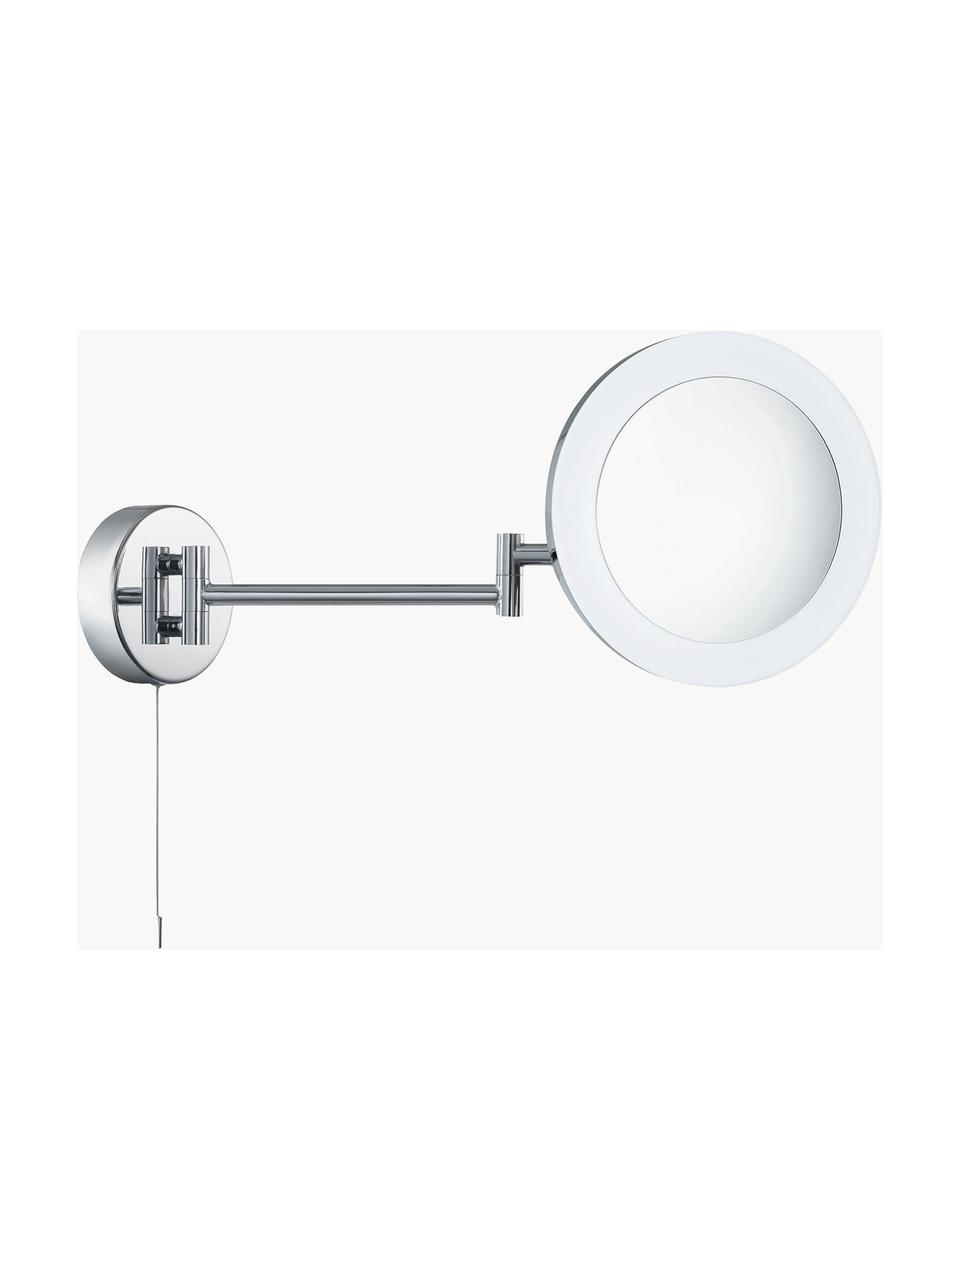 LED-Kosmetikspiegel Magnifying mit Vergrösserung, Gestell: Stahl, beschichtet, Silberfarben, B 40 x H 20 cm